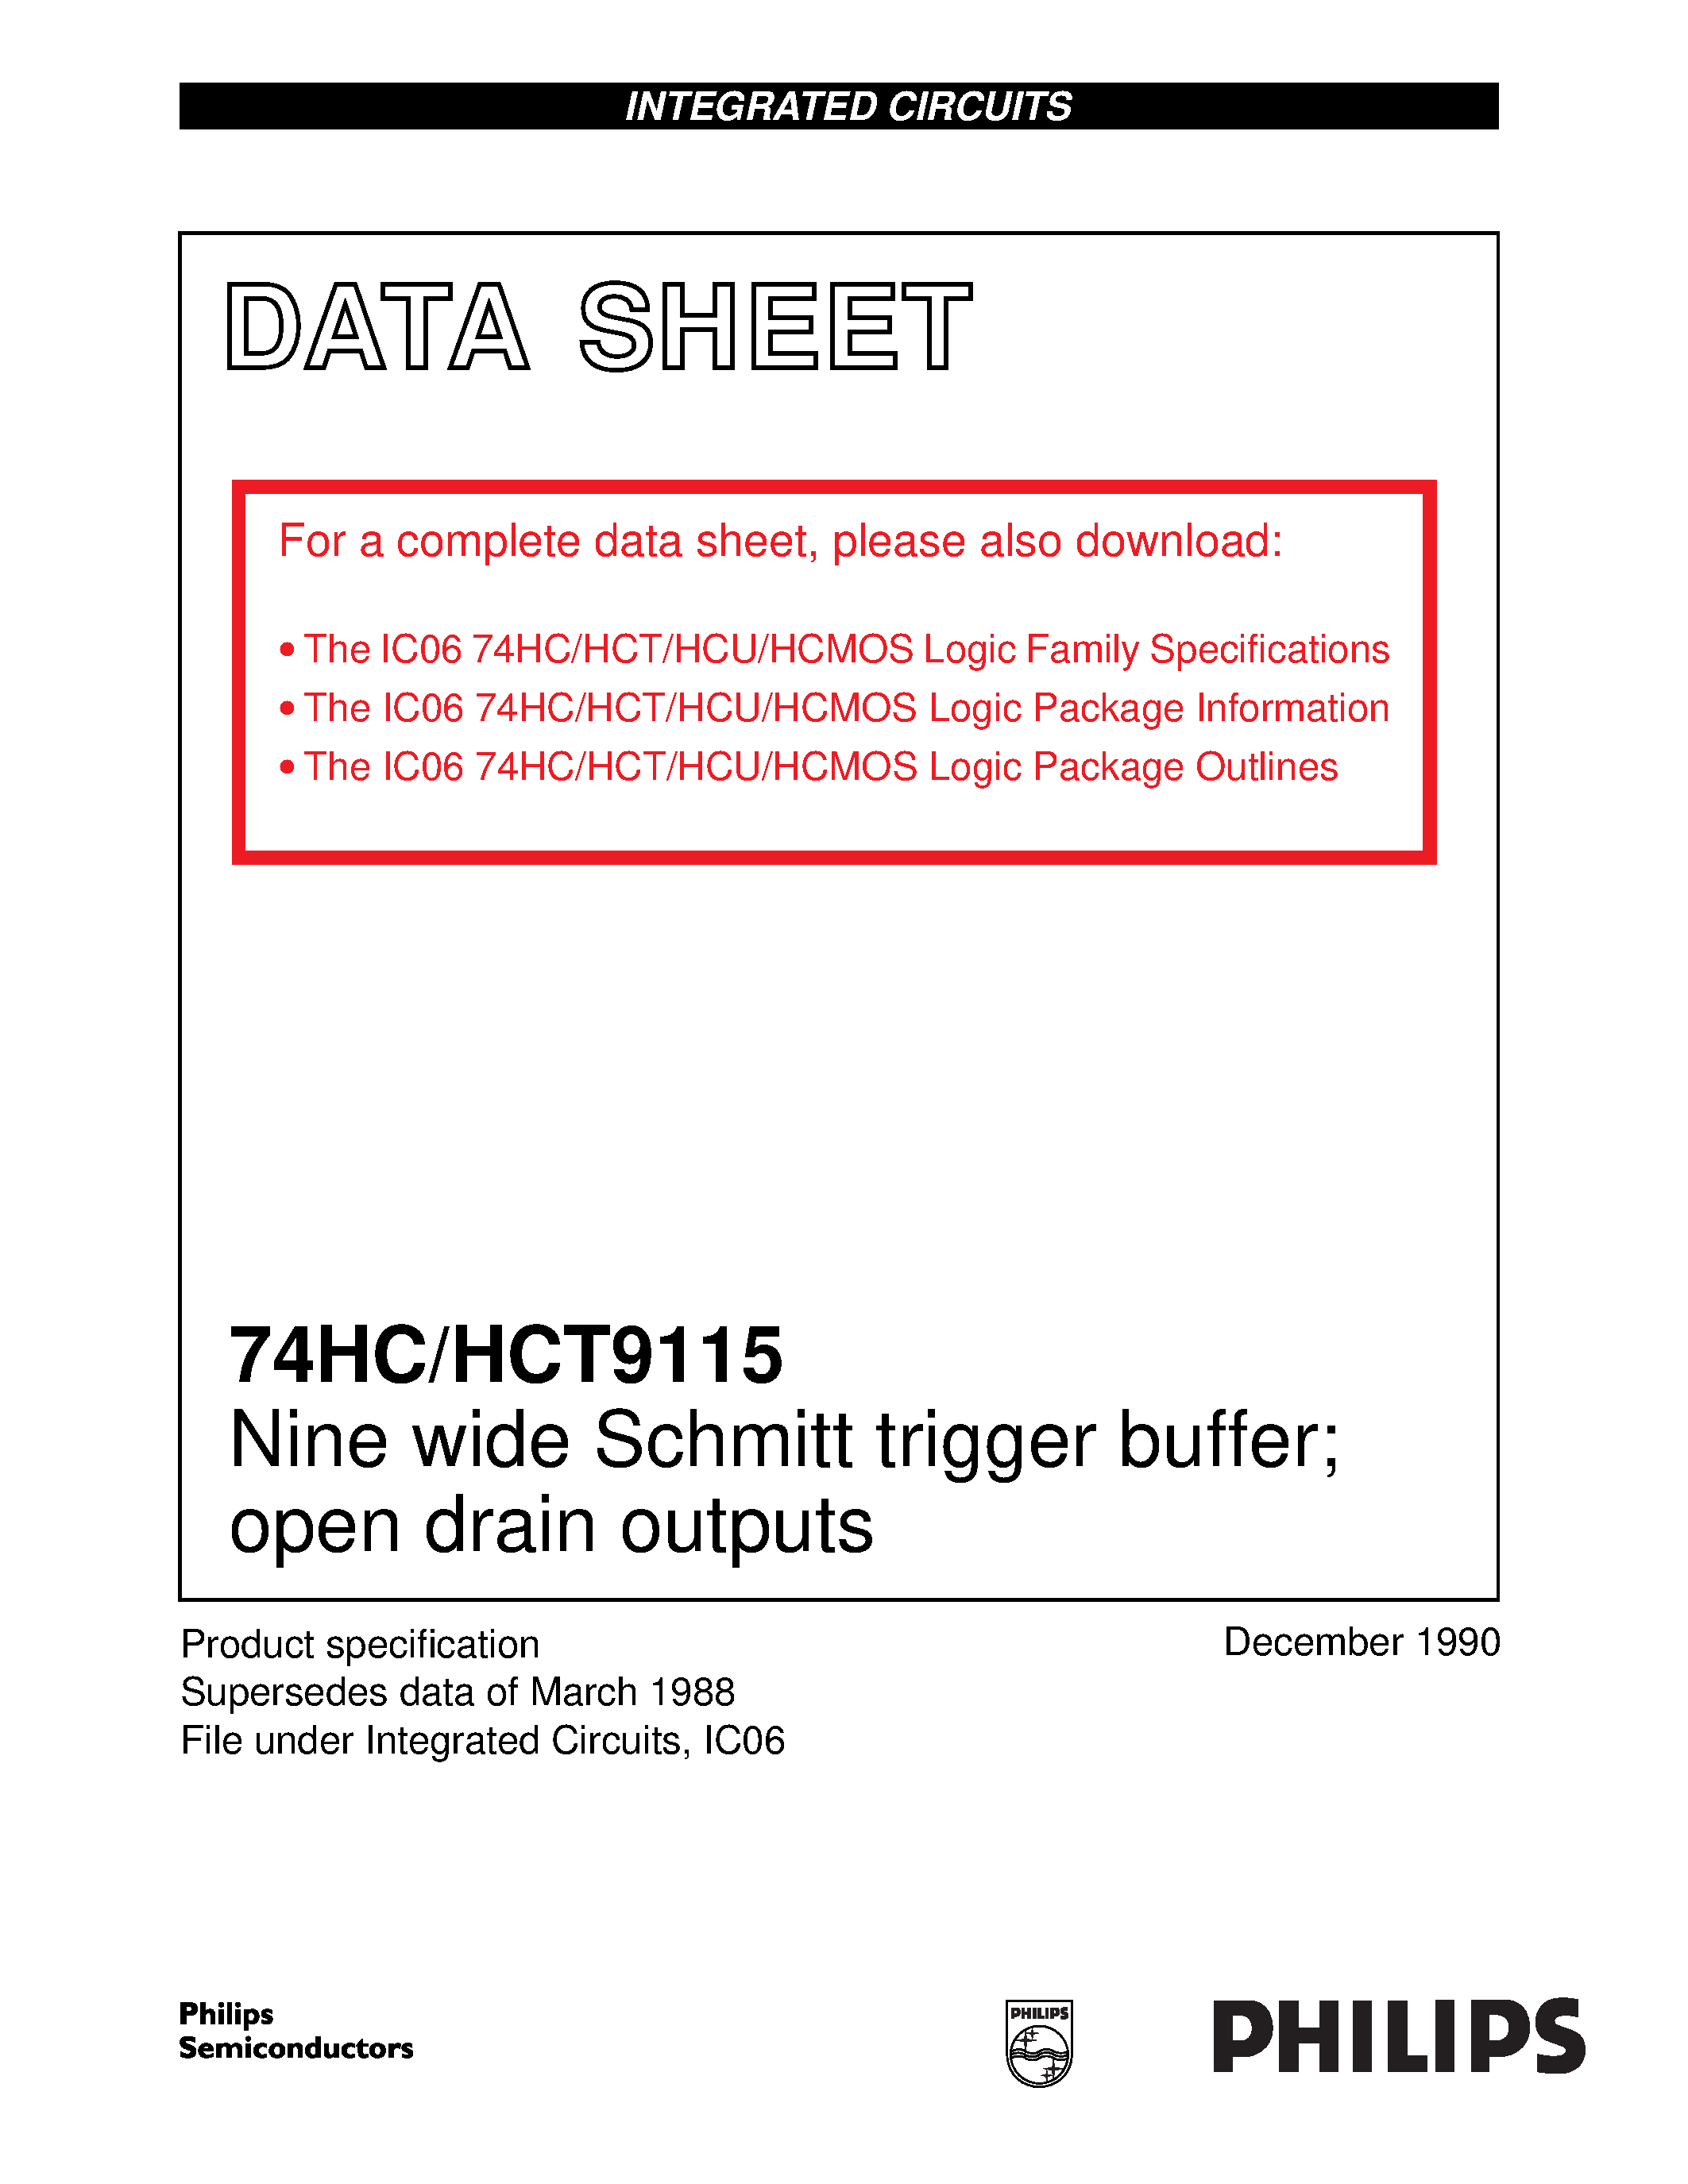 Datasheet 74HCT9115 - Nine wide Schmitt trigger buffer; open drain outputs page 1